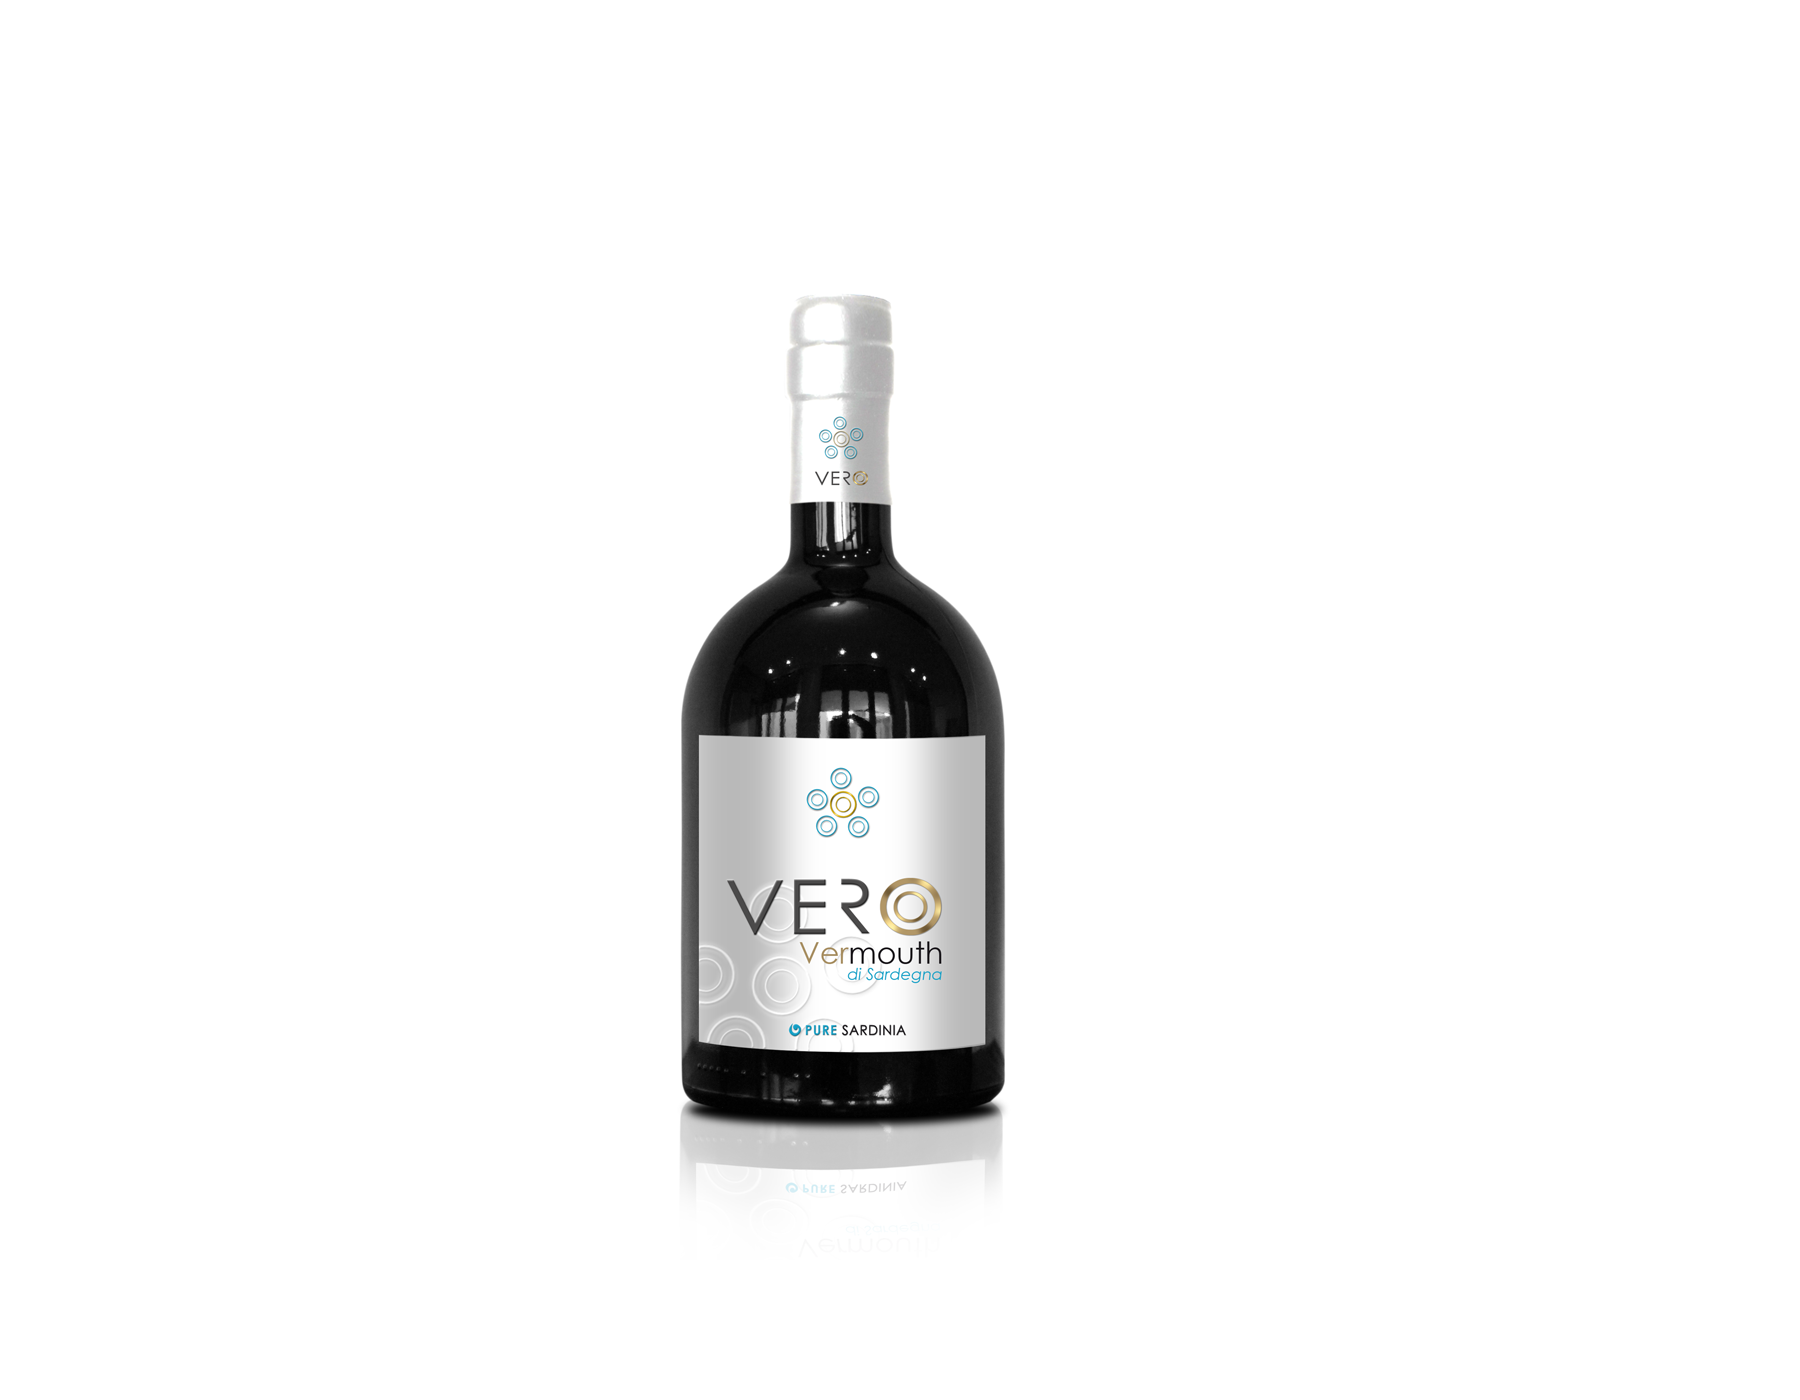 Vero Vermouth Pure Sardinia 750 ml